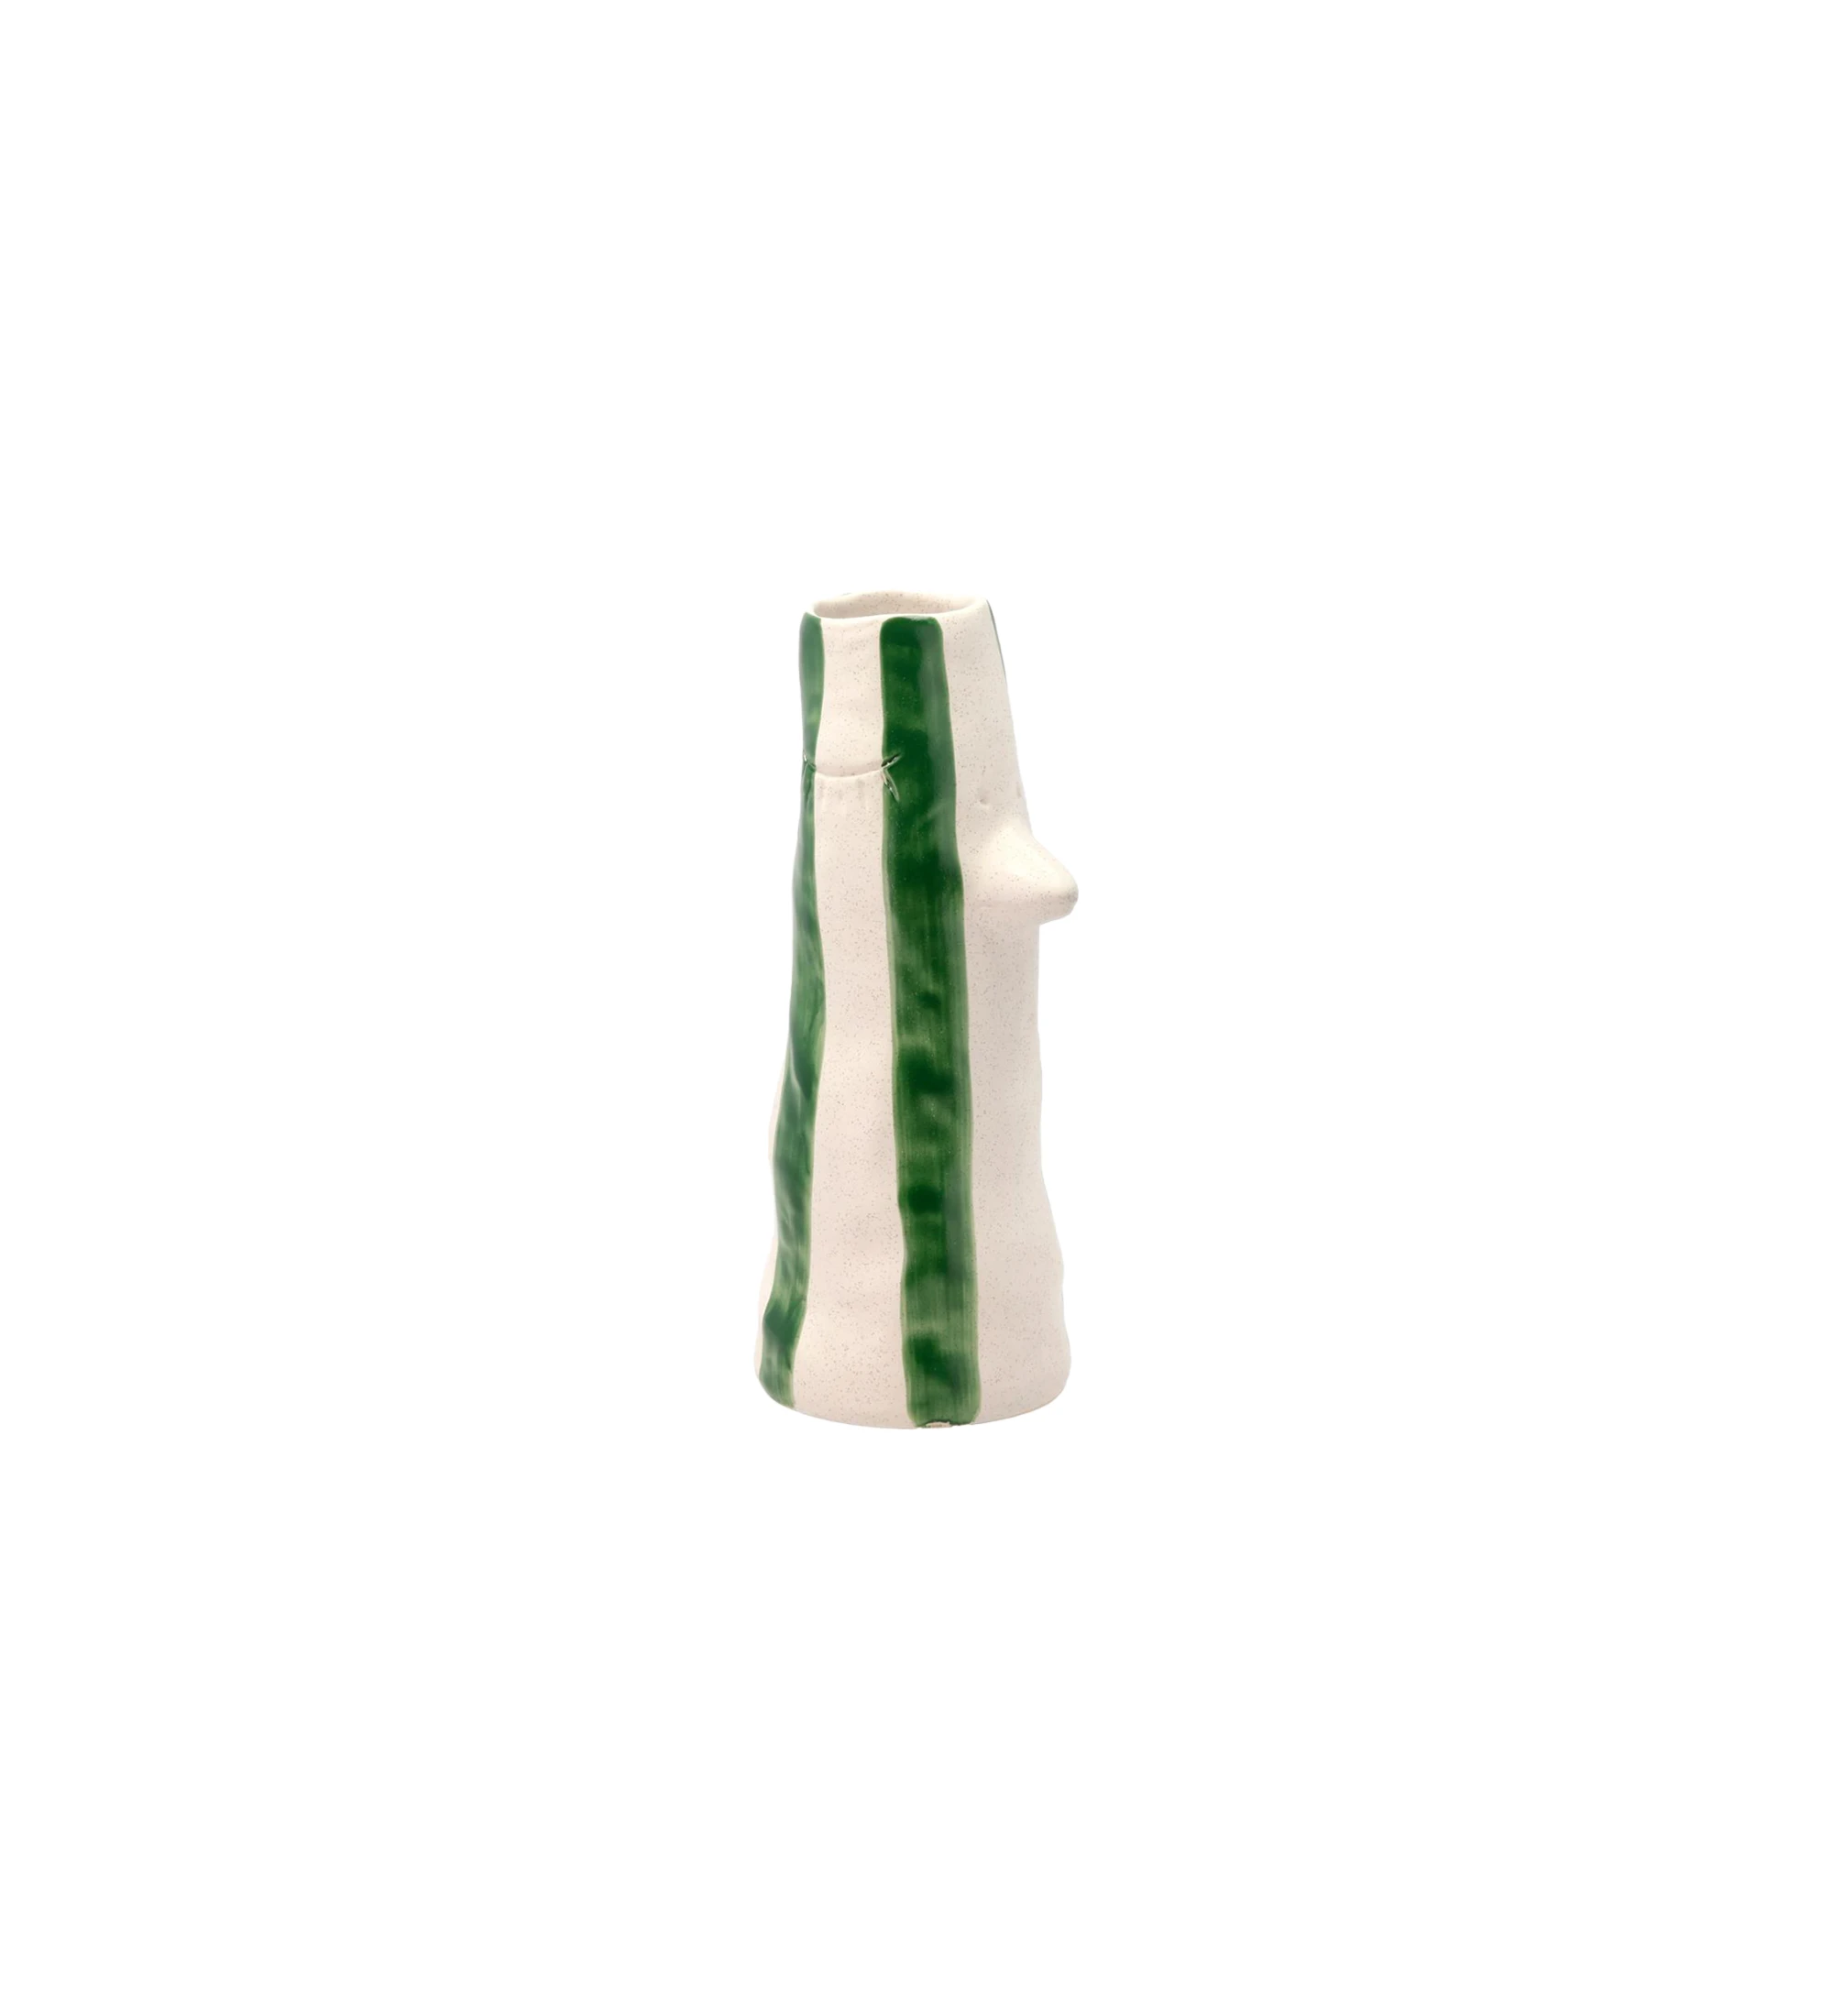 Jarra em grés com bico e pestanas, é decorada com listras verdes pintadas à mão.